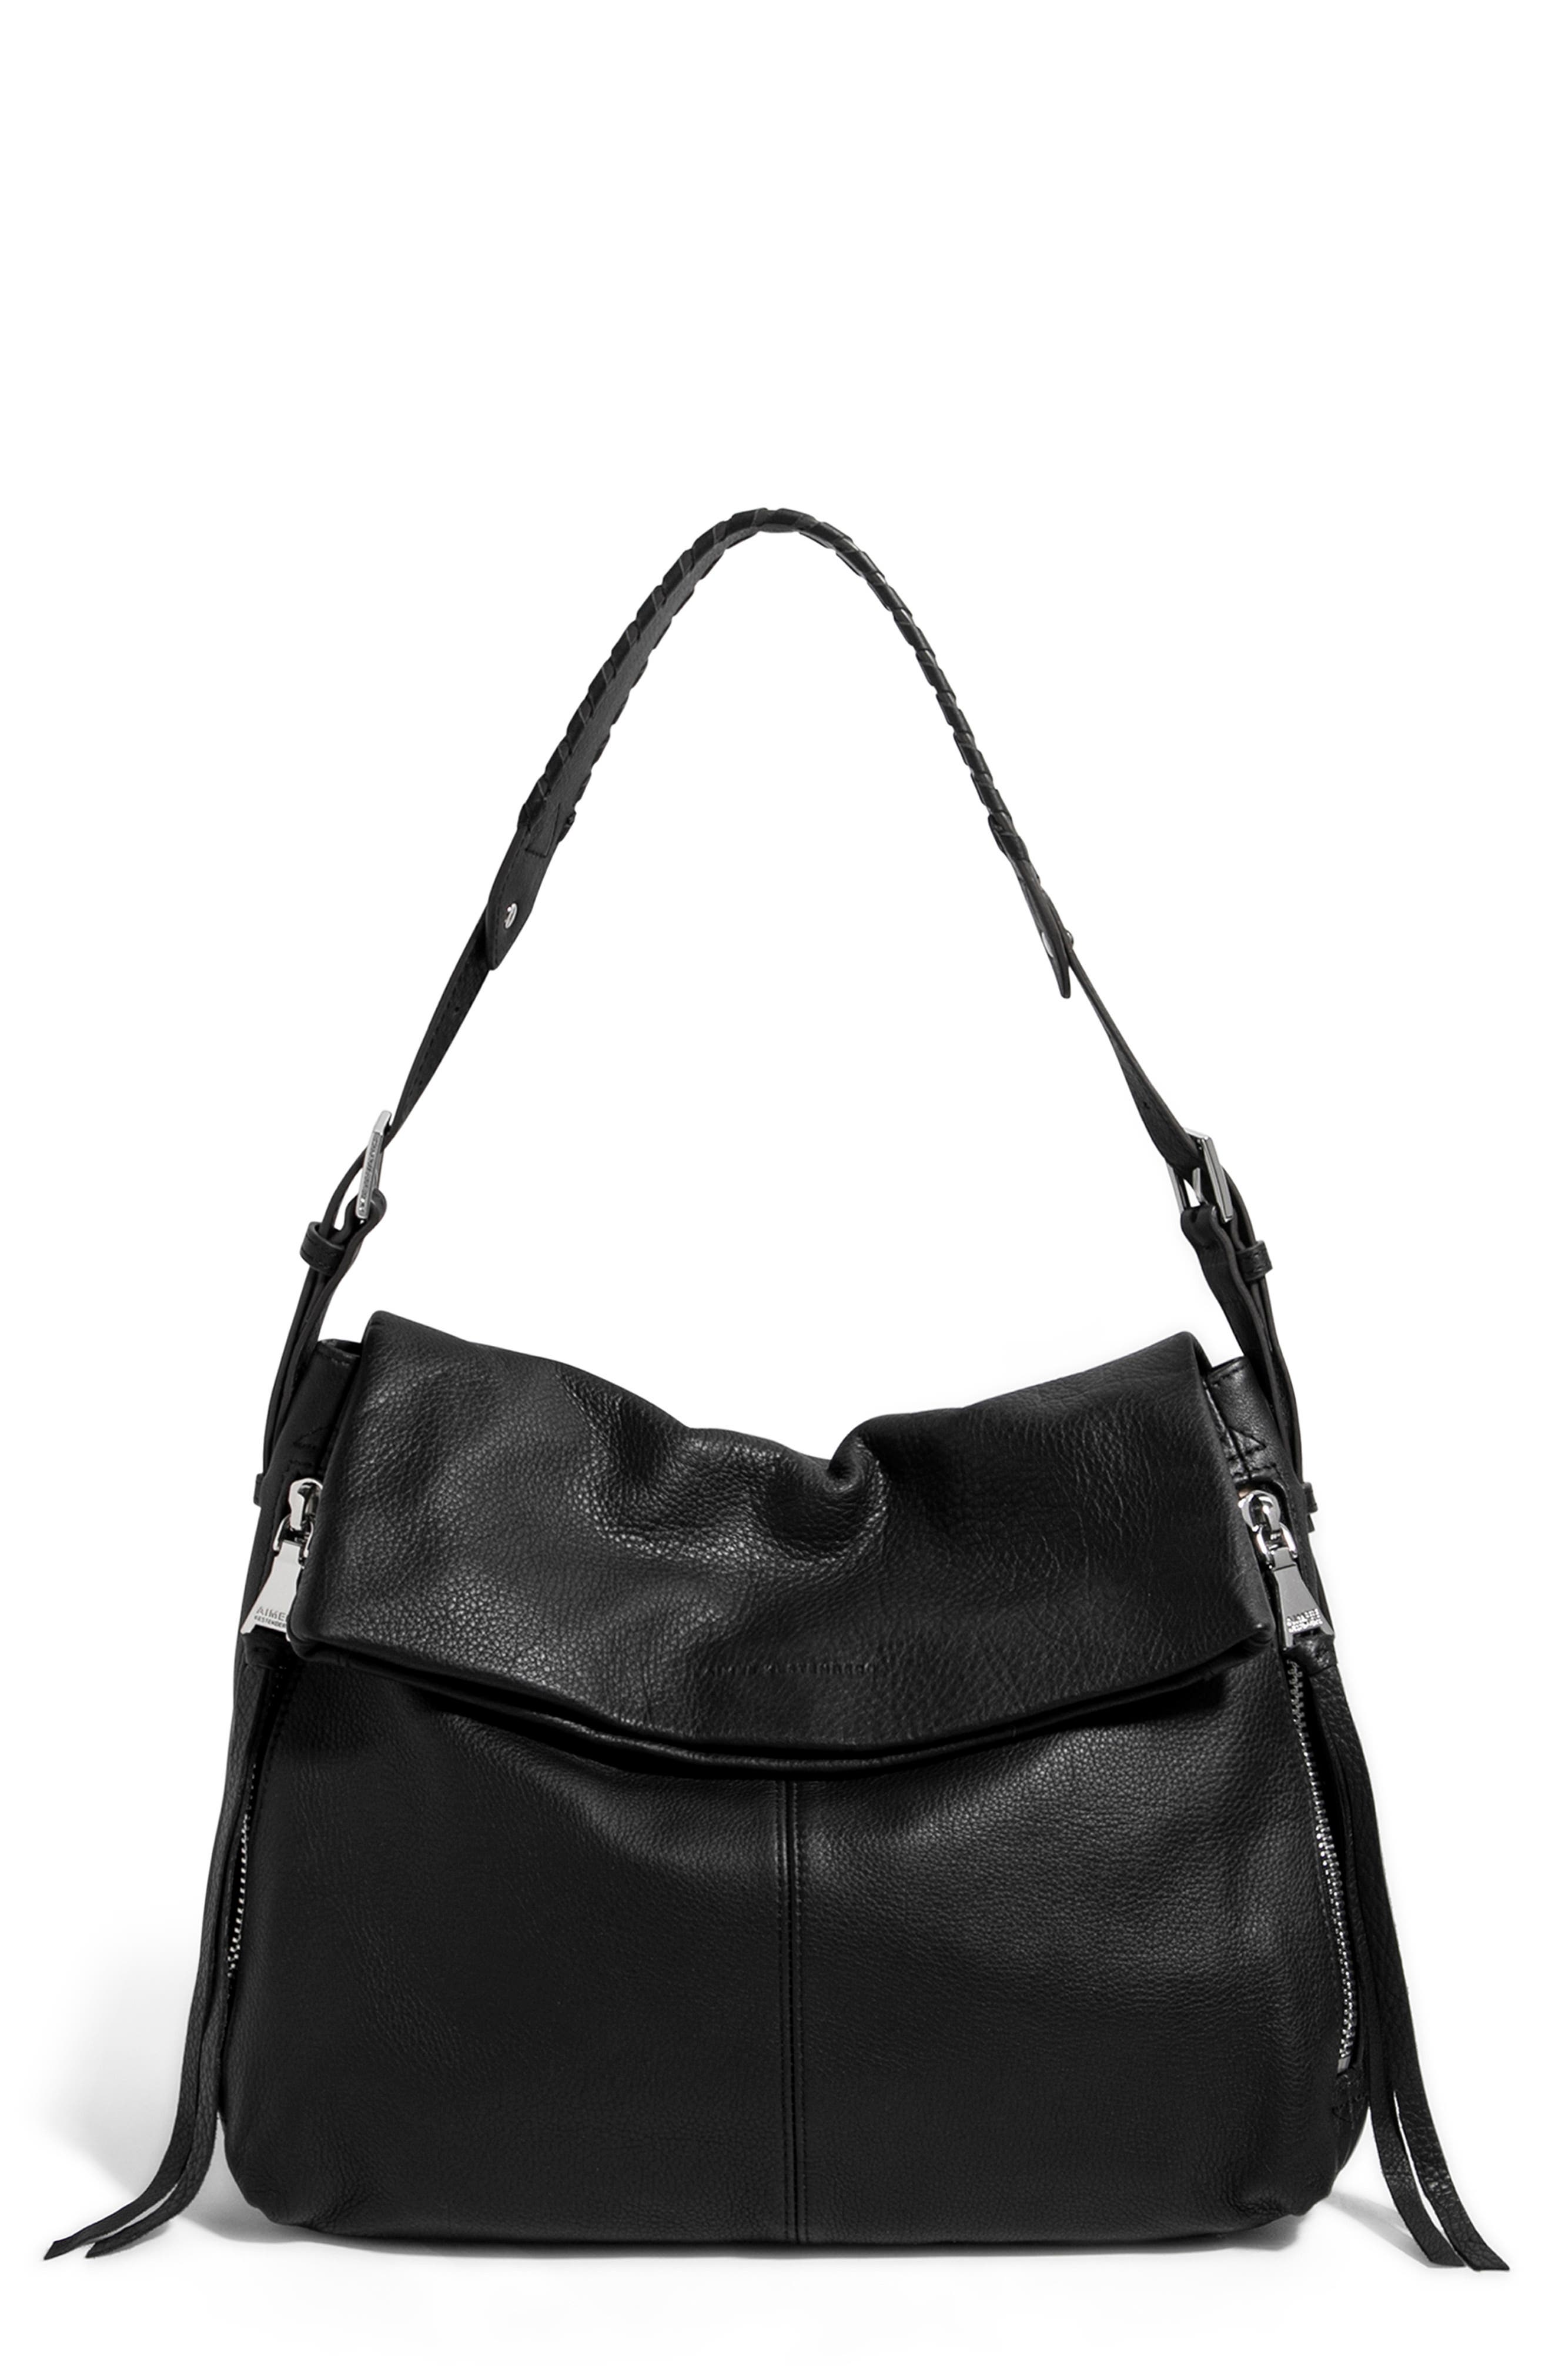 Aimee Kestenberg Penelope Leather Hobo Bag In Black